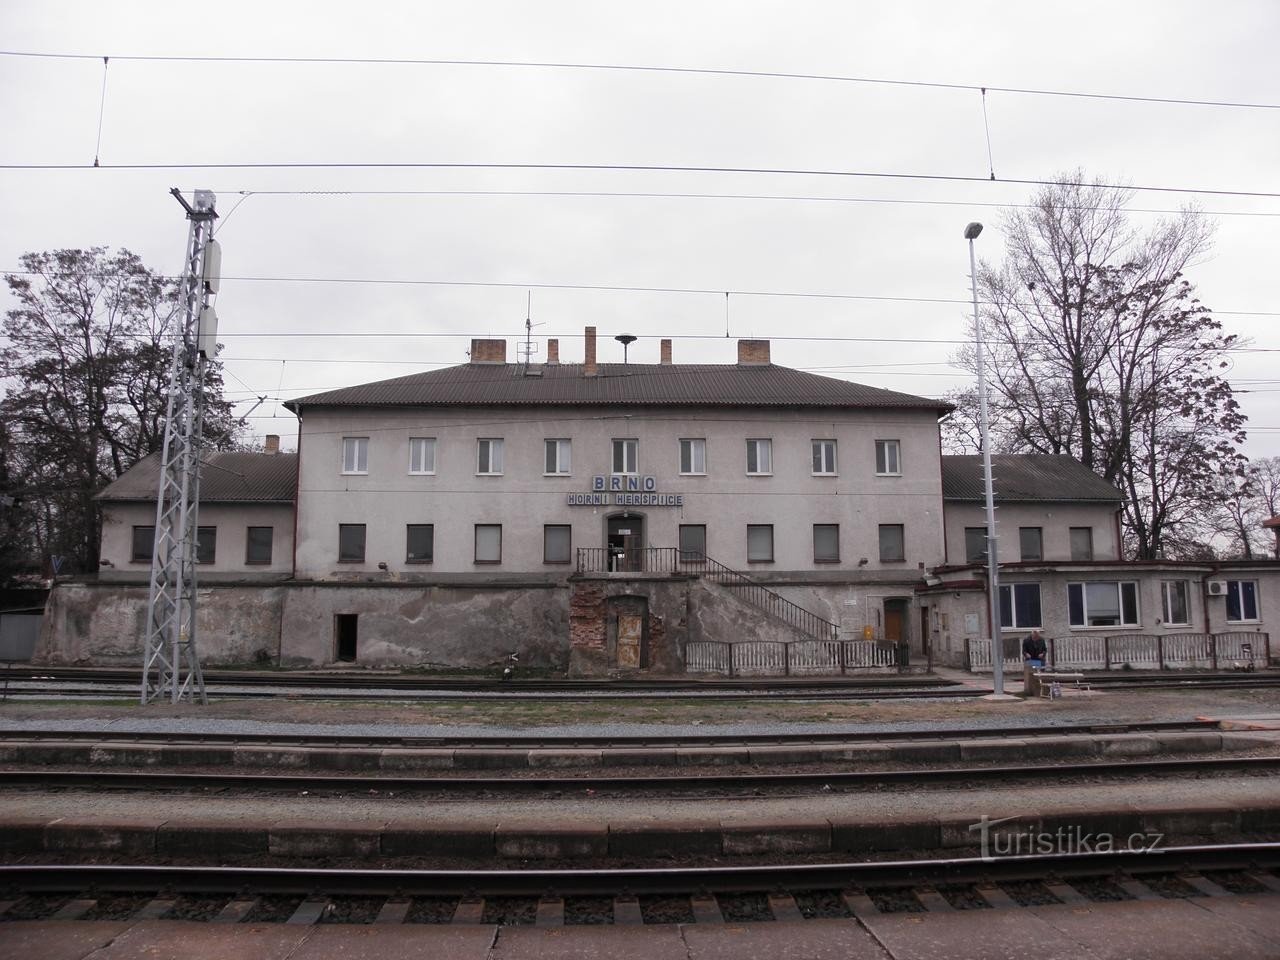 Railway Brno Horní Heršpice - 31.3.2010